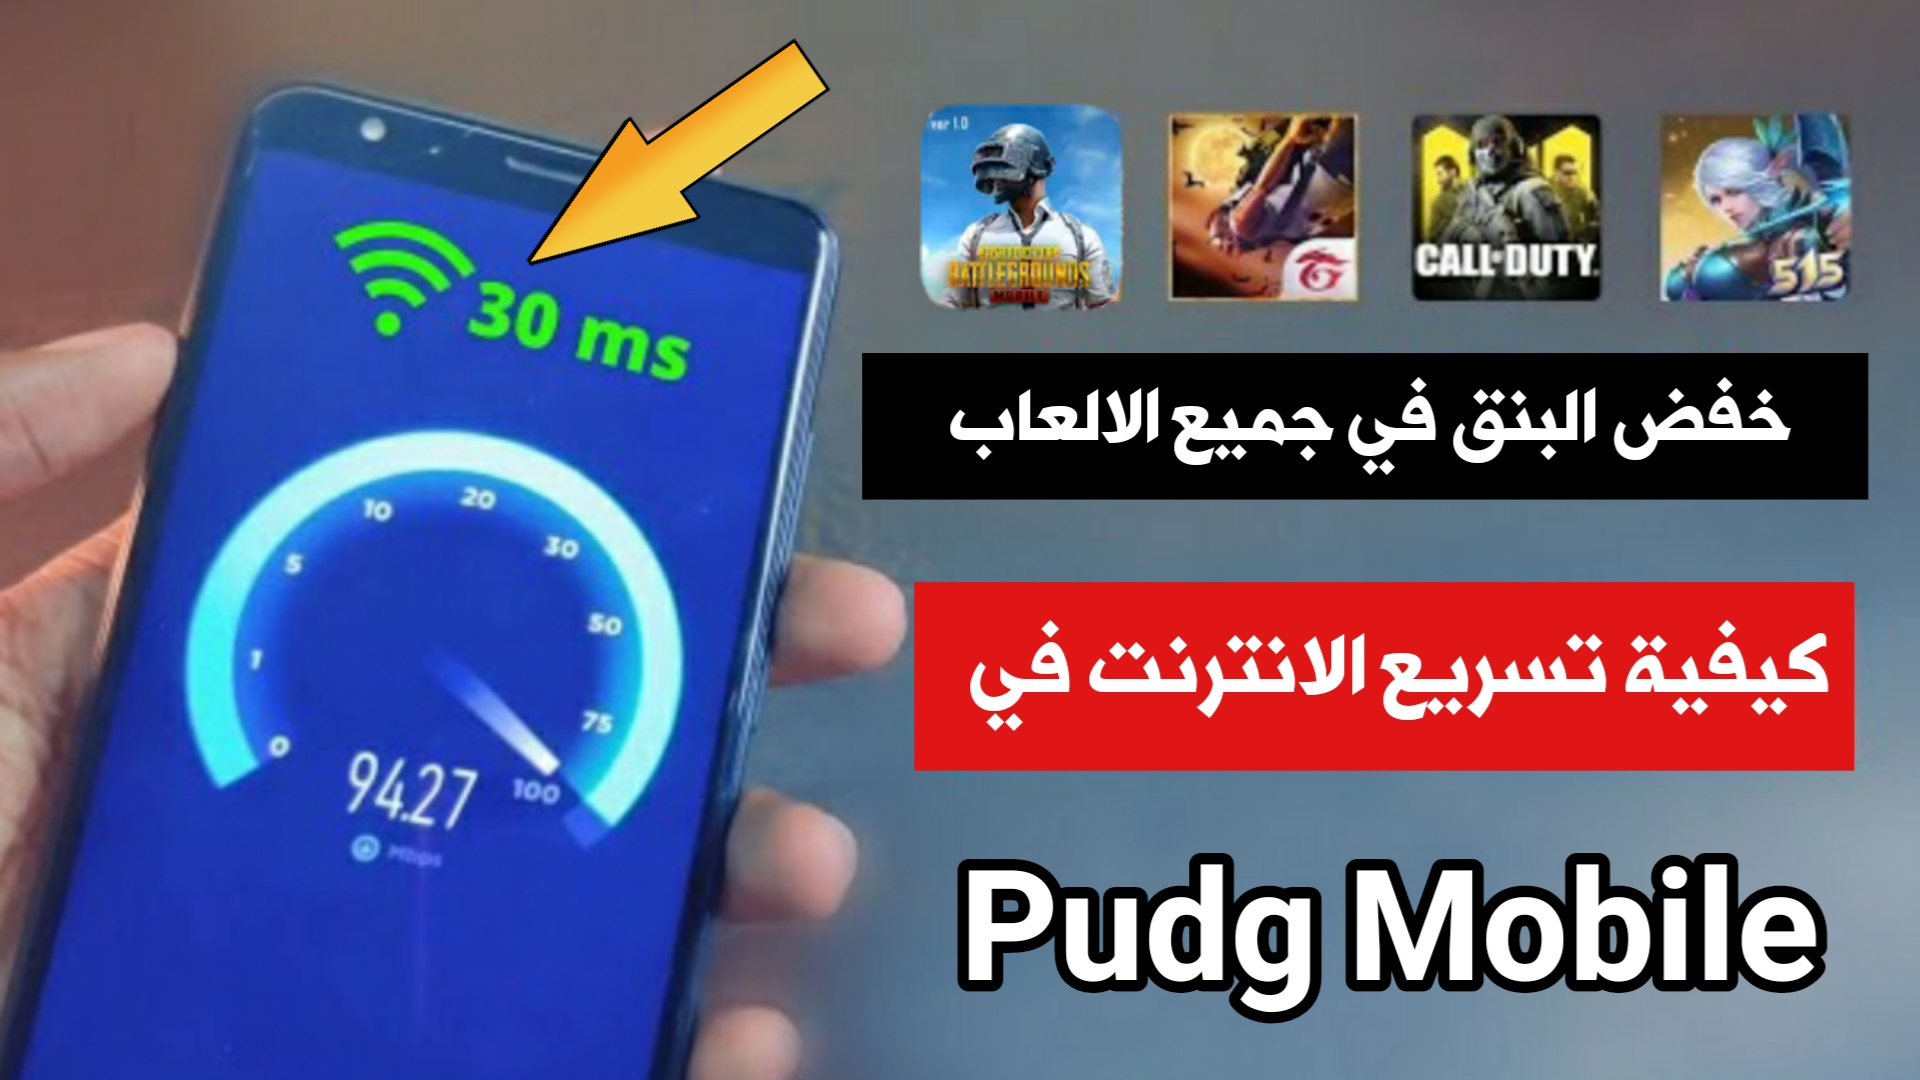 كيفية تسريع الانترنت في Pudg Mobile وأخفض البنق الى 30ms